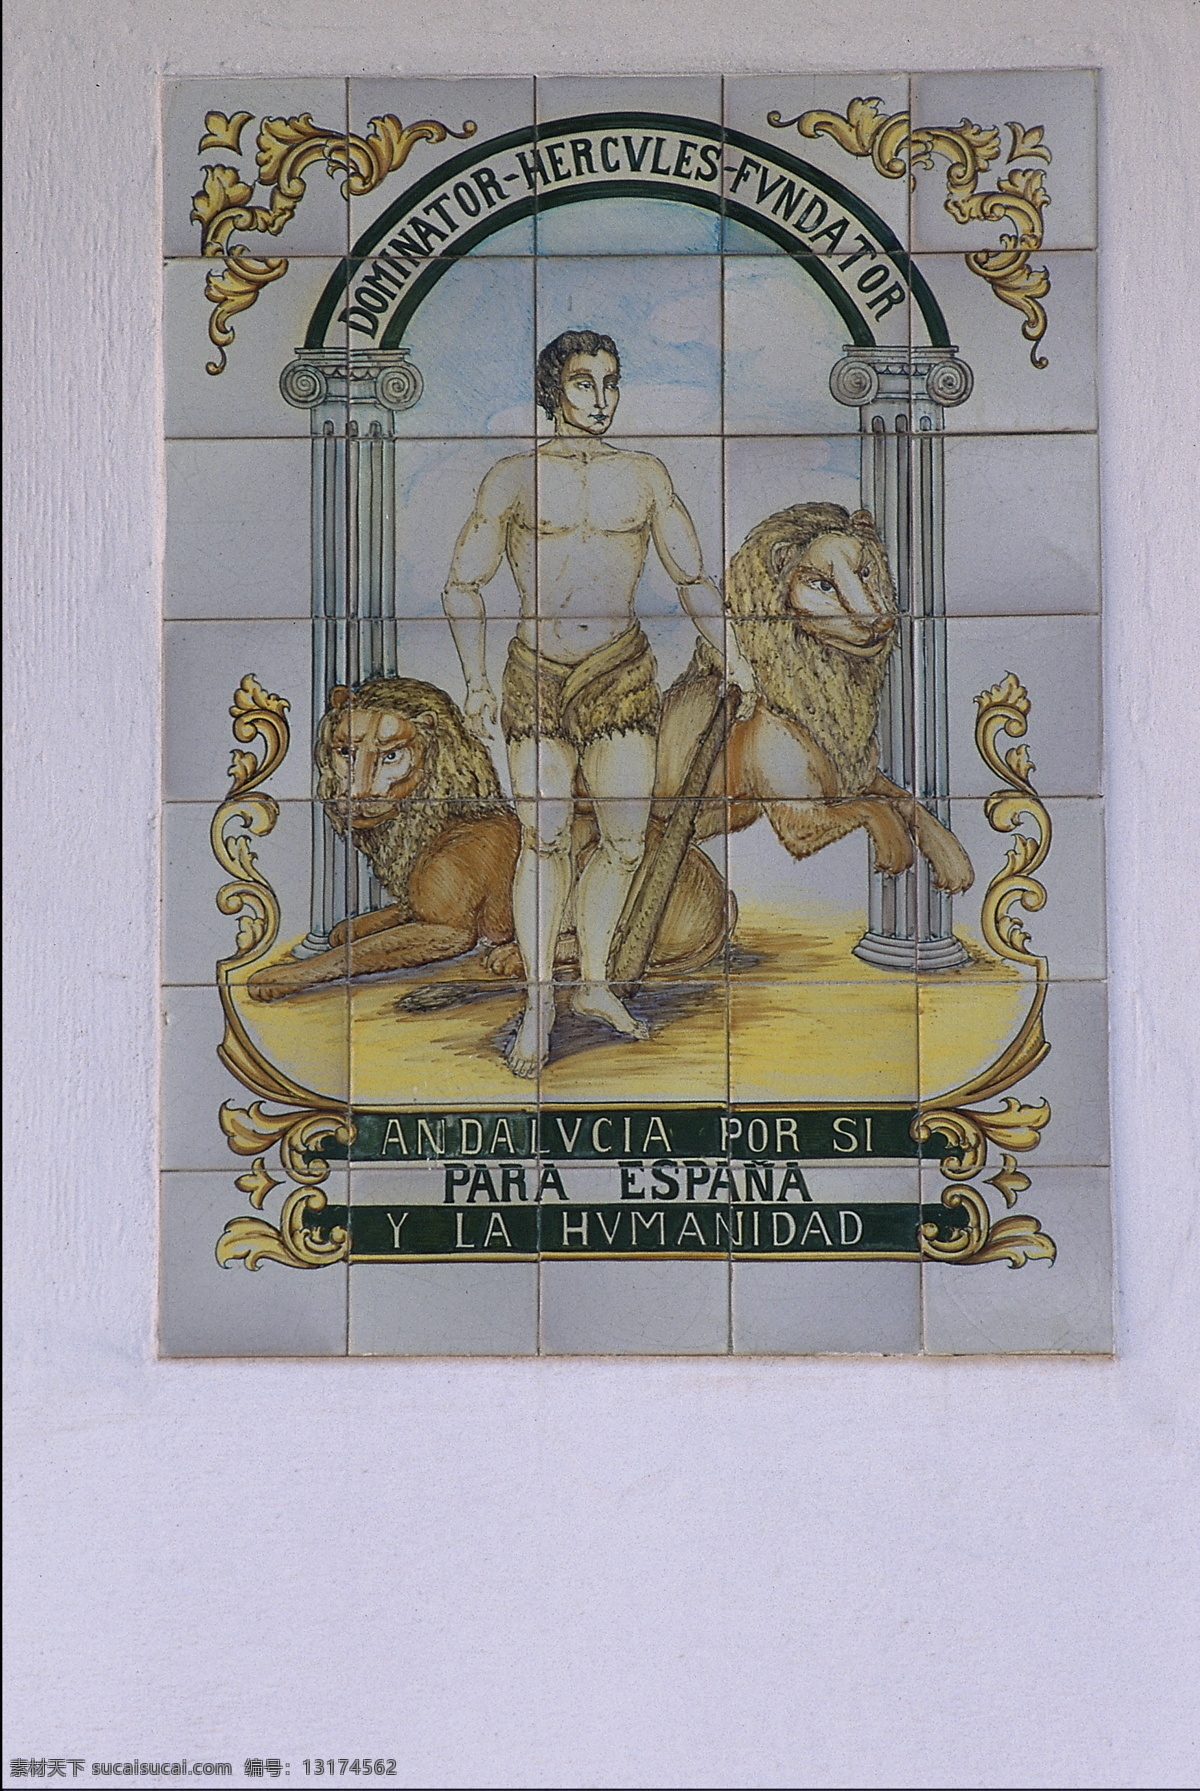 雄狮 壁画 雄狮壁画 世界 宗教 素材图片 西方 瓷砖 雄狮磁片壁画 雄狮瓷砖拼图 文化艺术